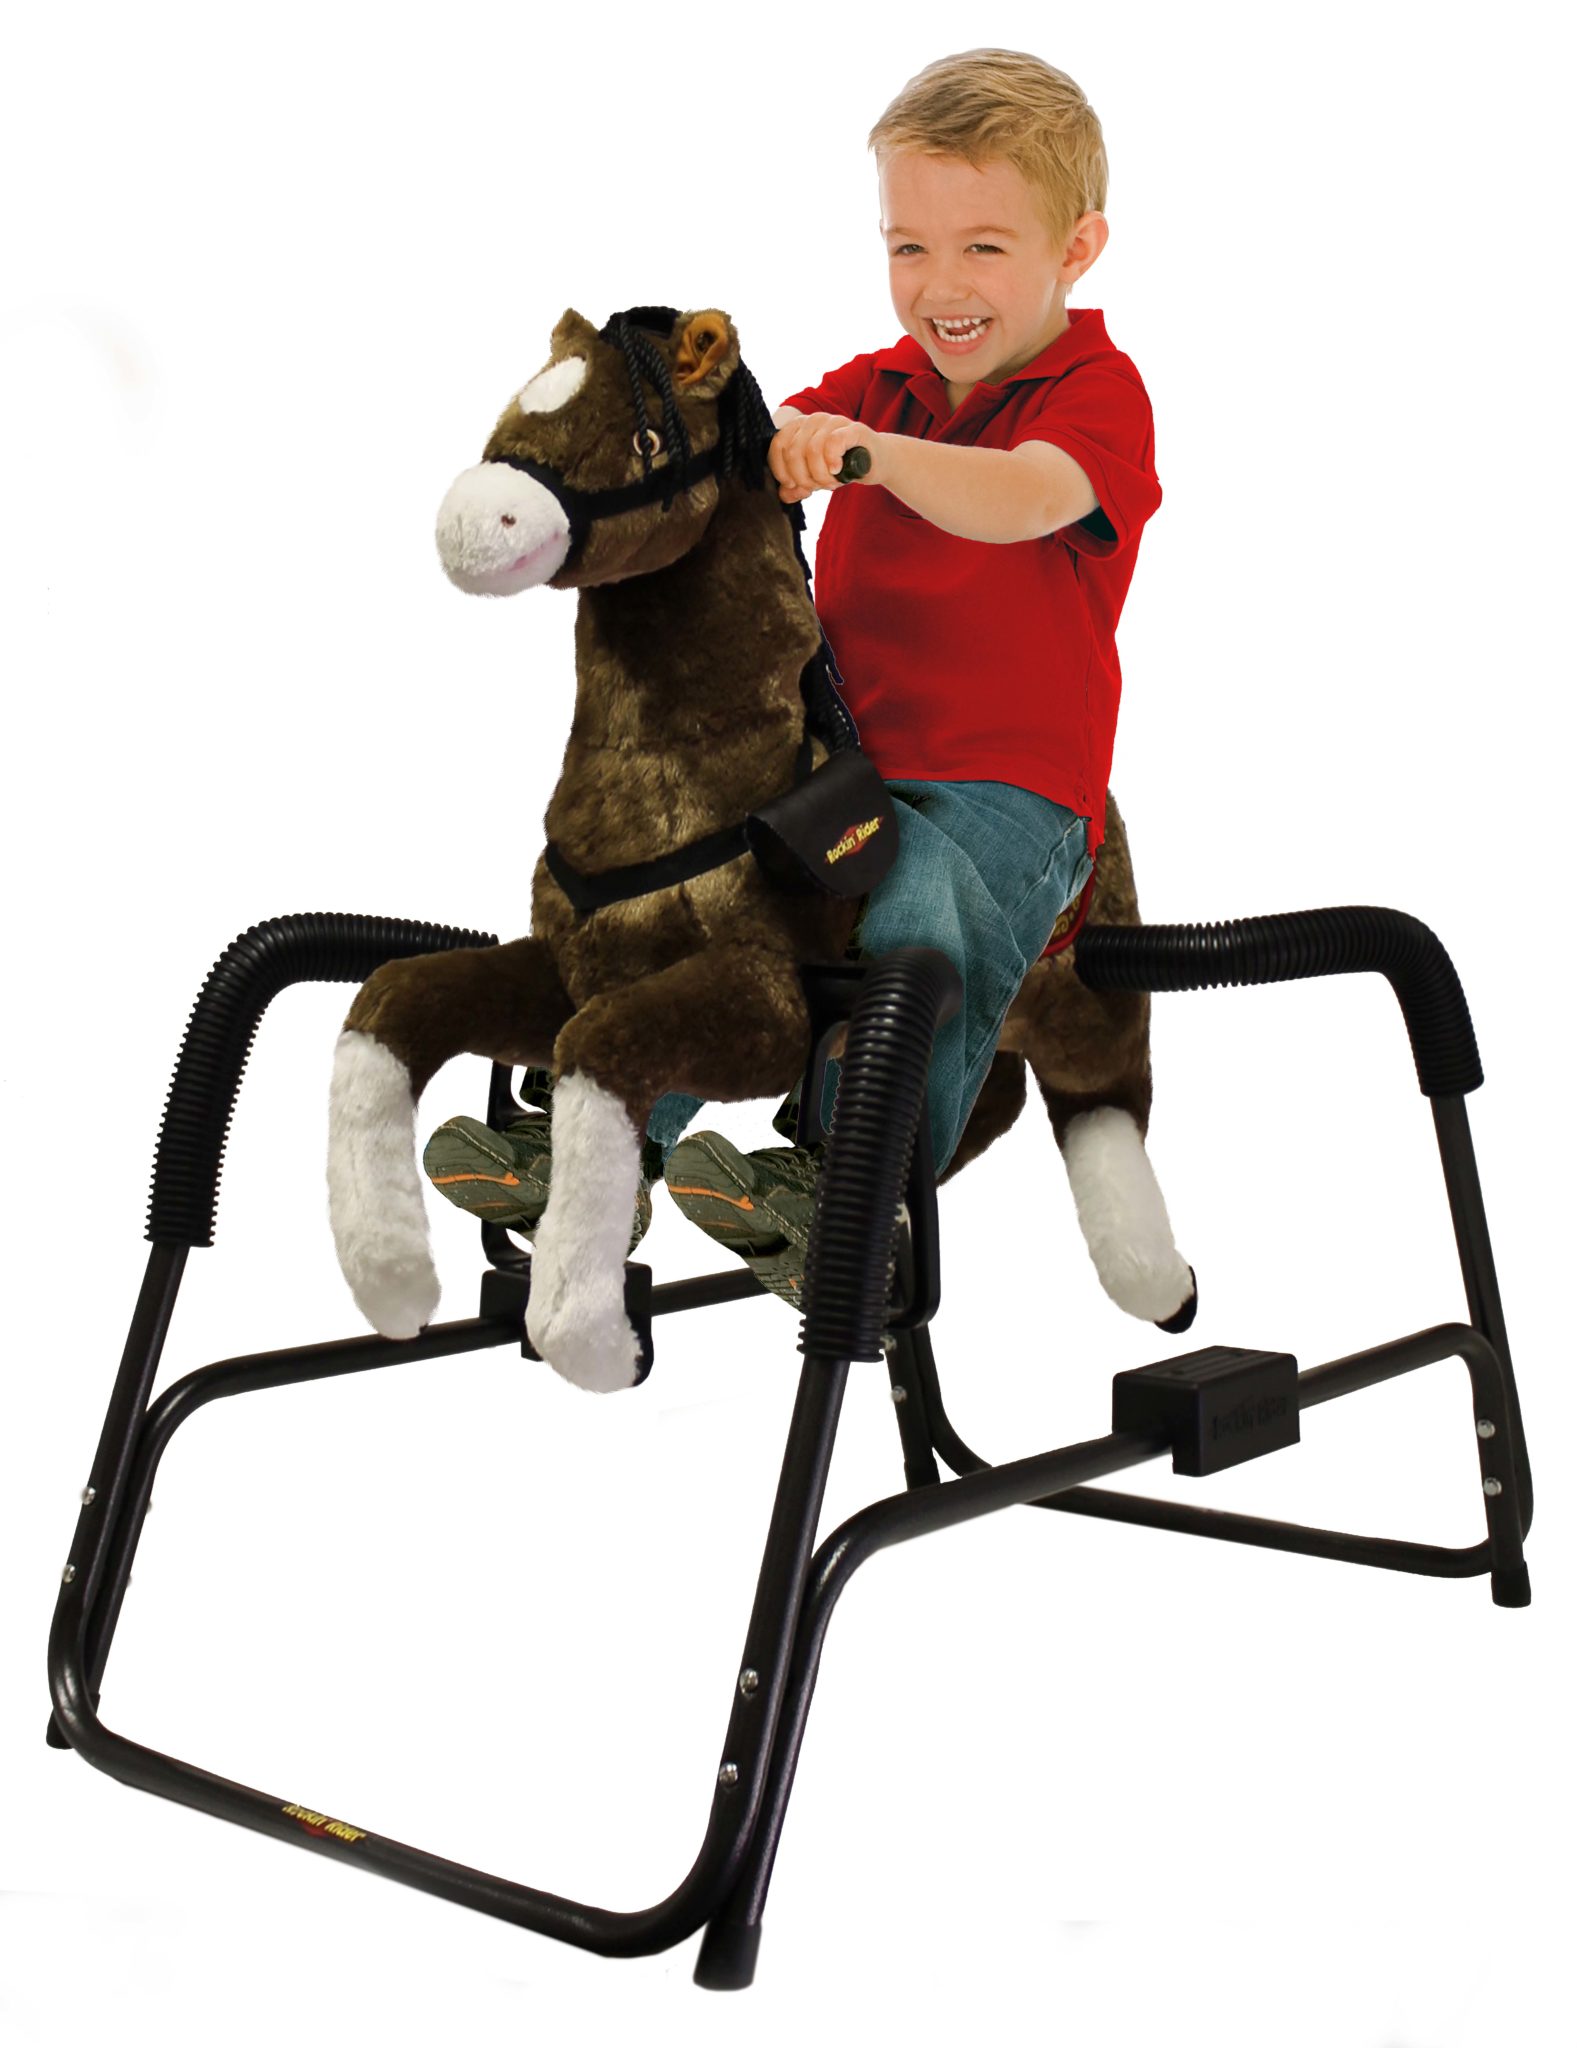 Rockin' Rider Talking Plush Animated Spring Horse Rocking Toy Ride On Fun Play 